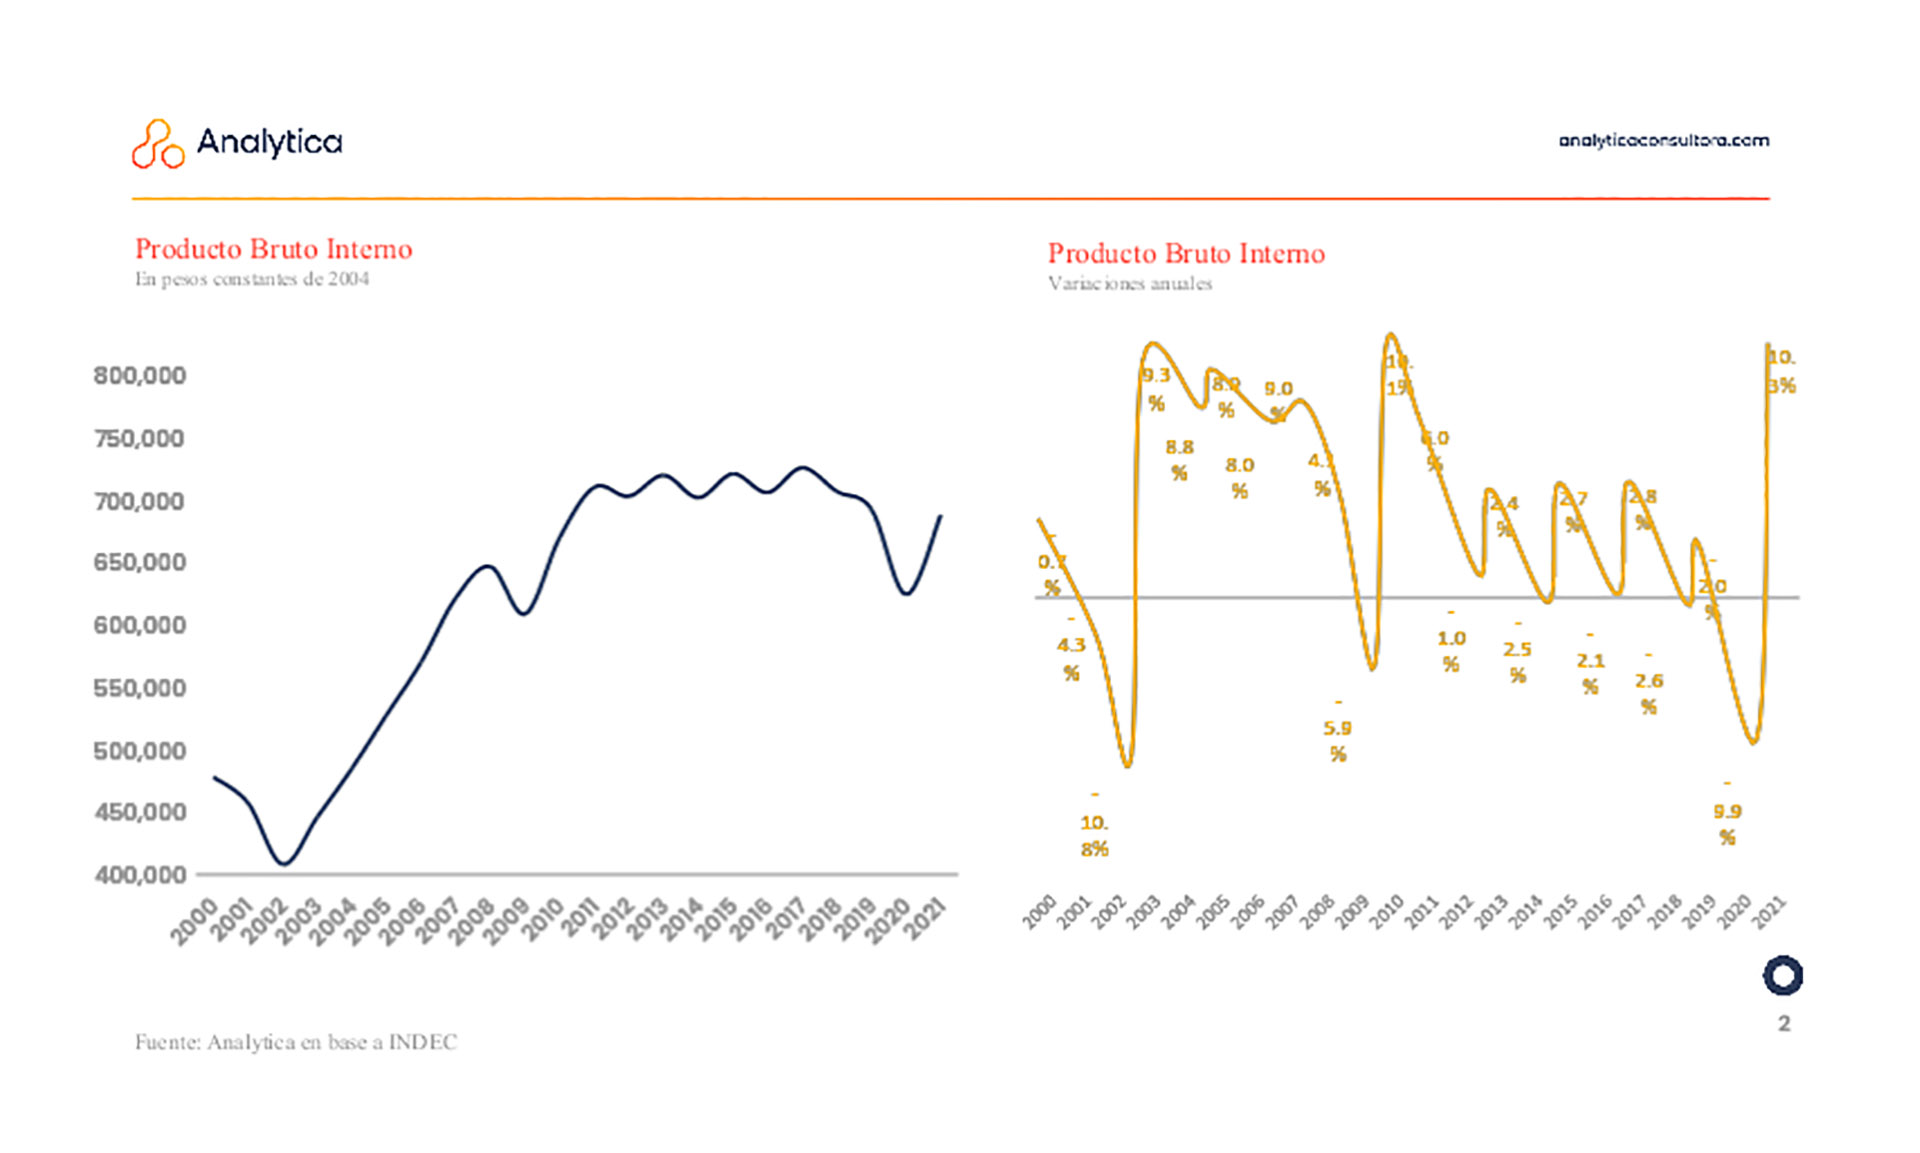 Evolución del PBI
Fuente: Analytica